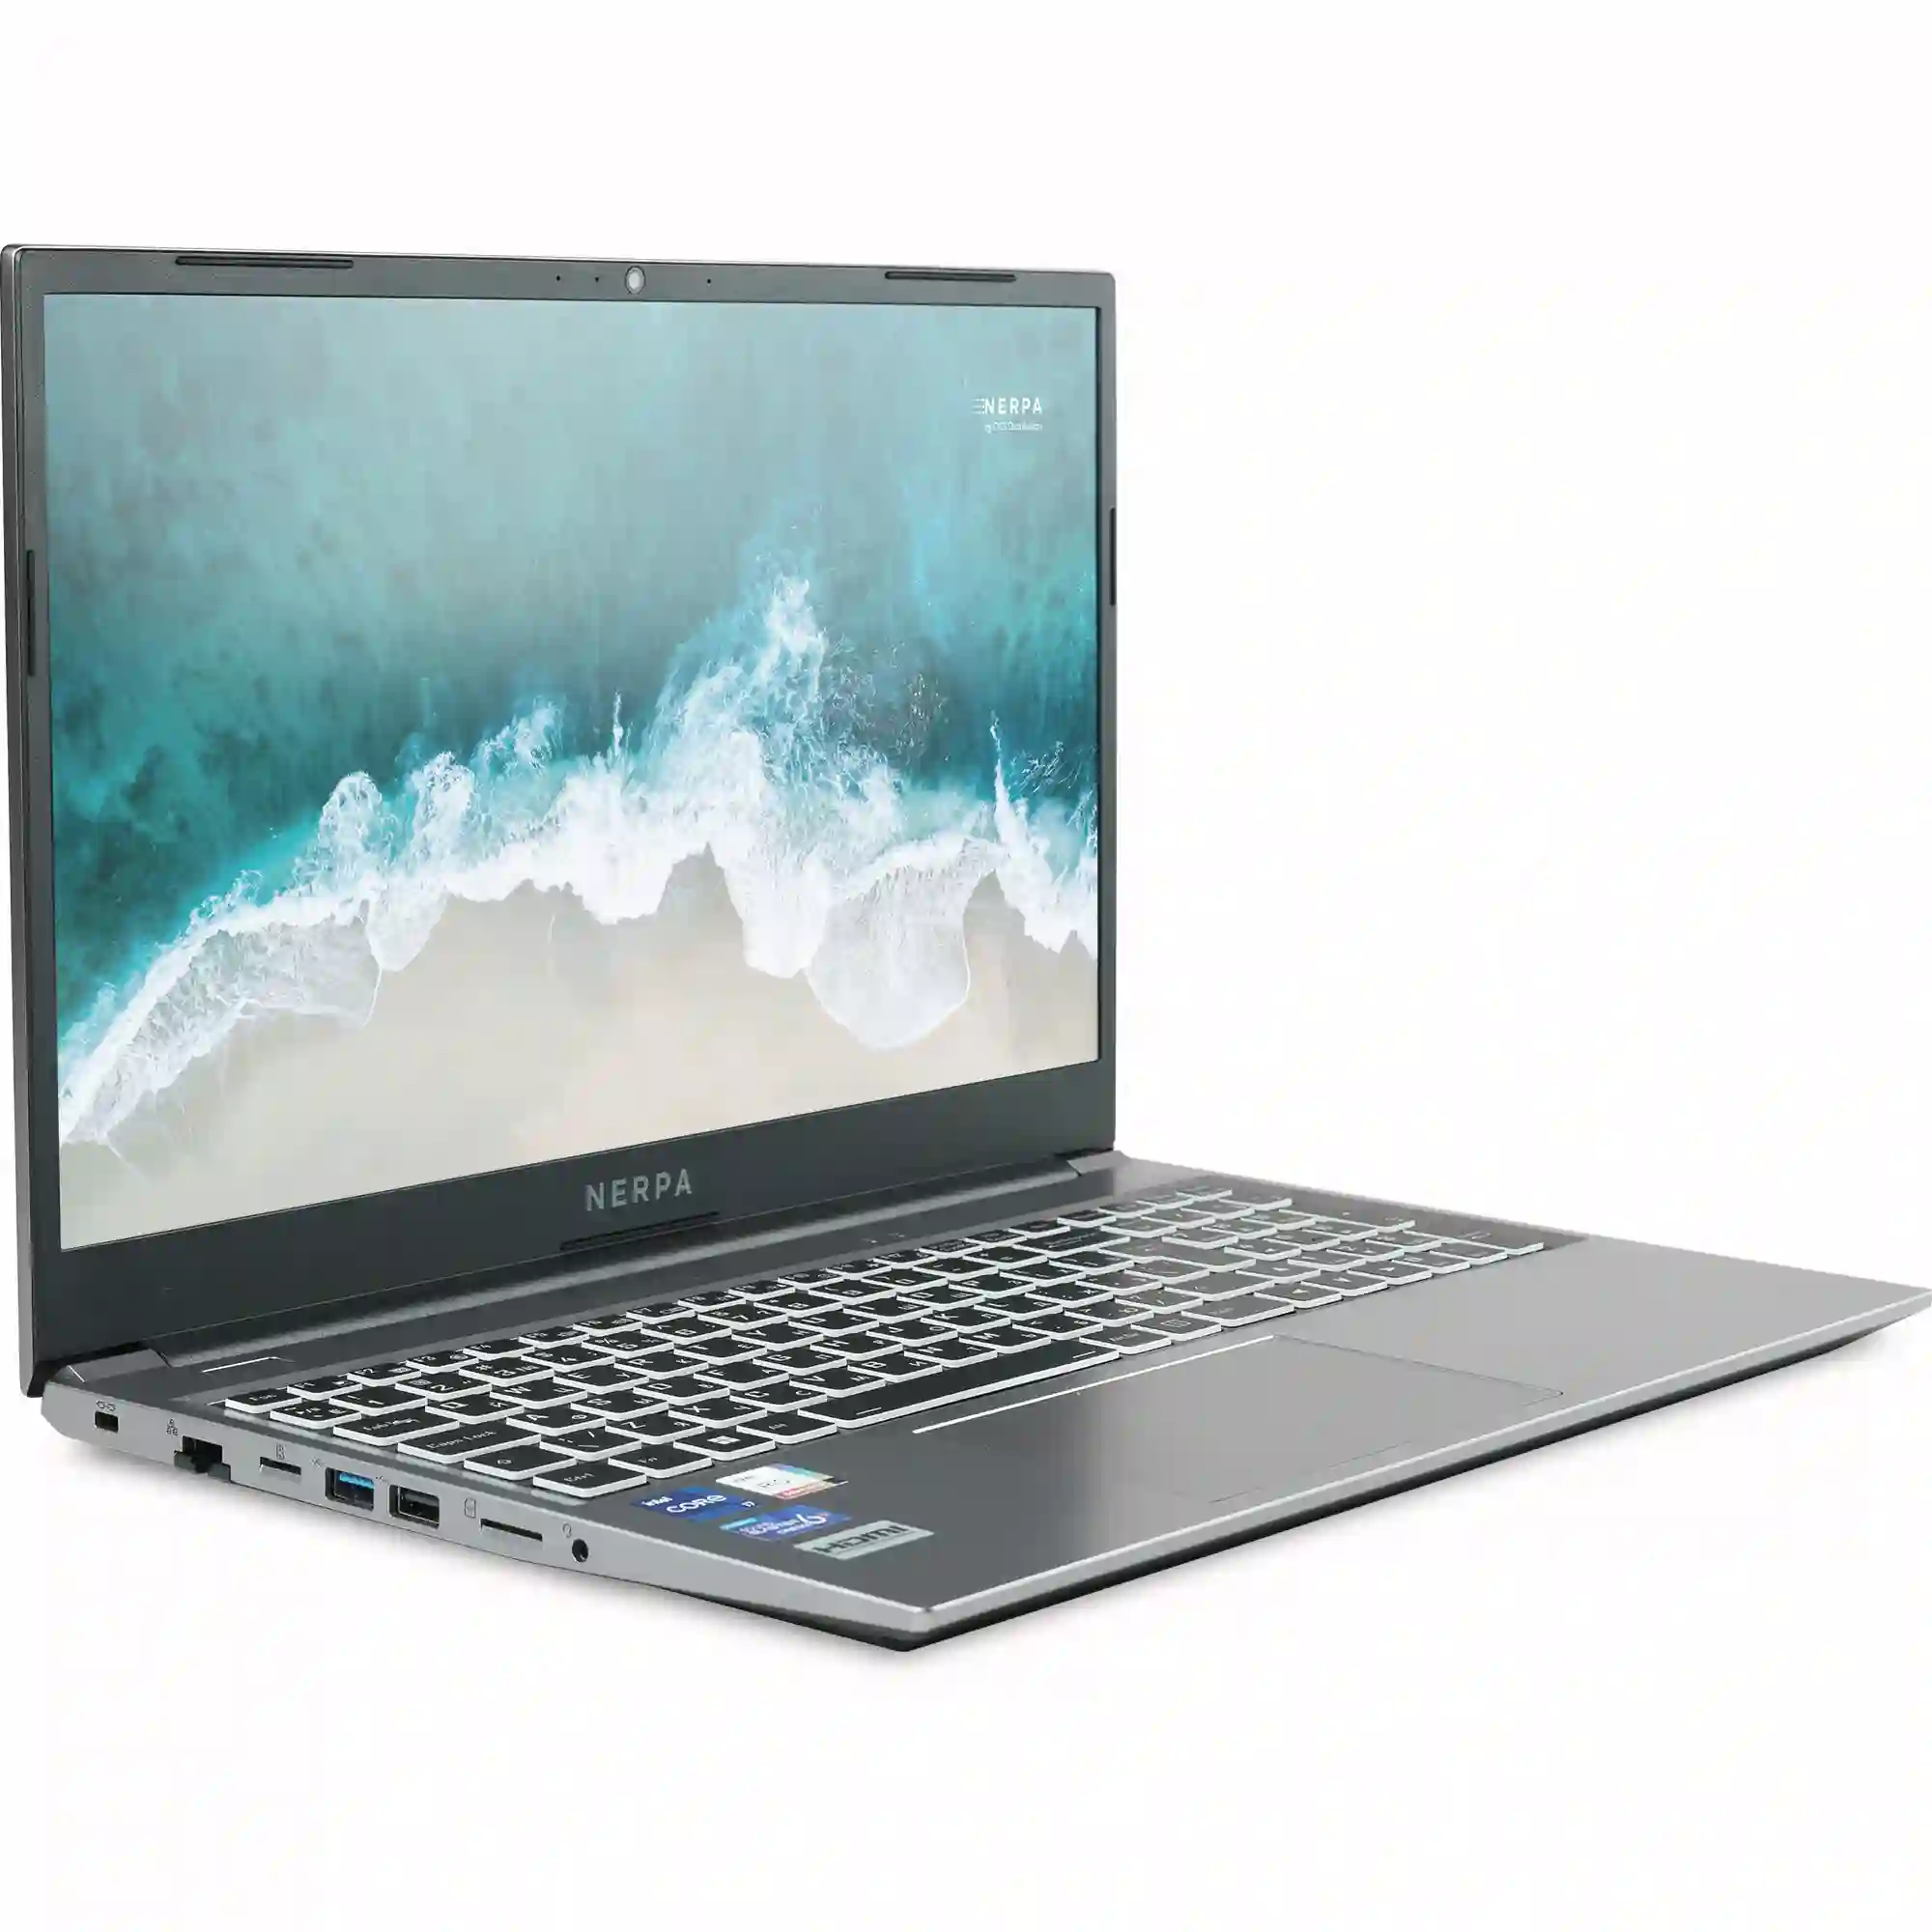 Ноутбук NERPA Caspica I752-15 15.6" (I752-15AD165202G)